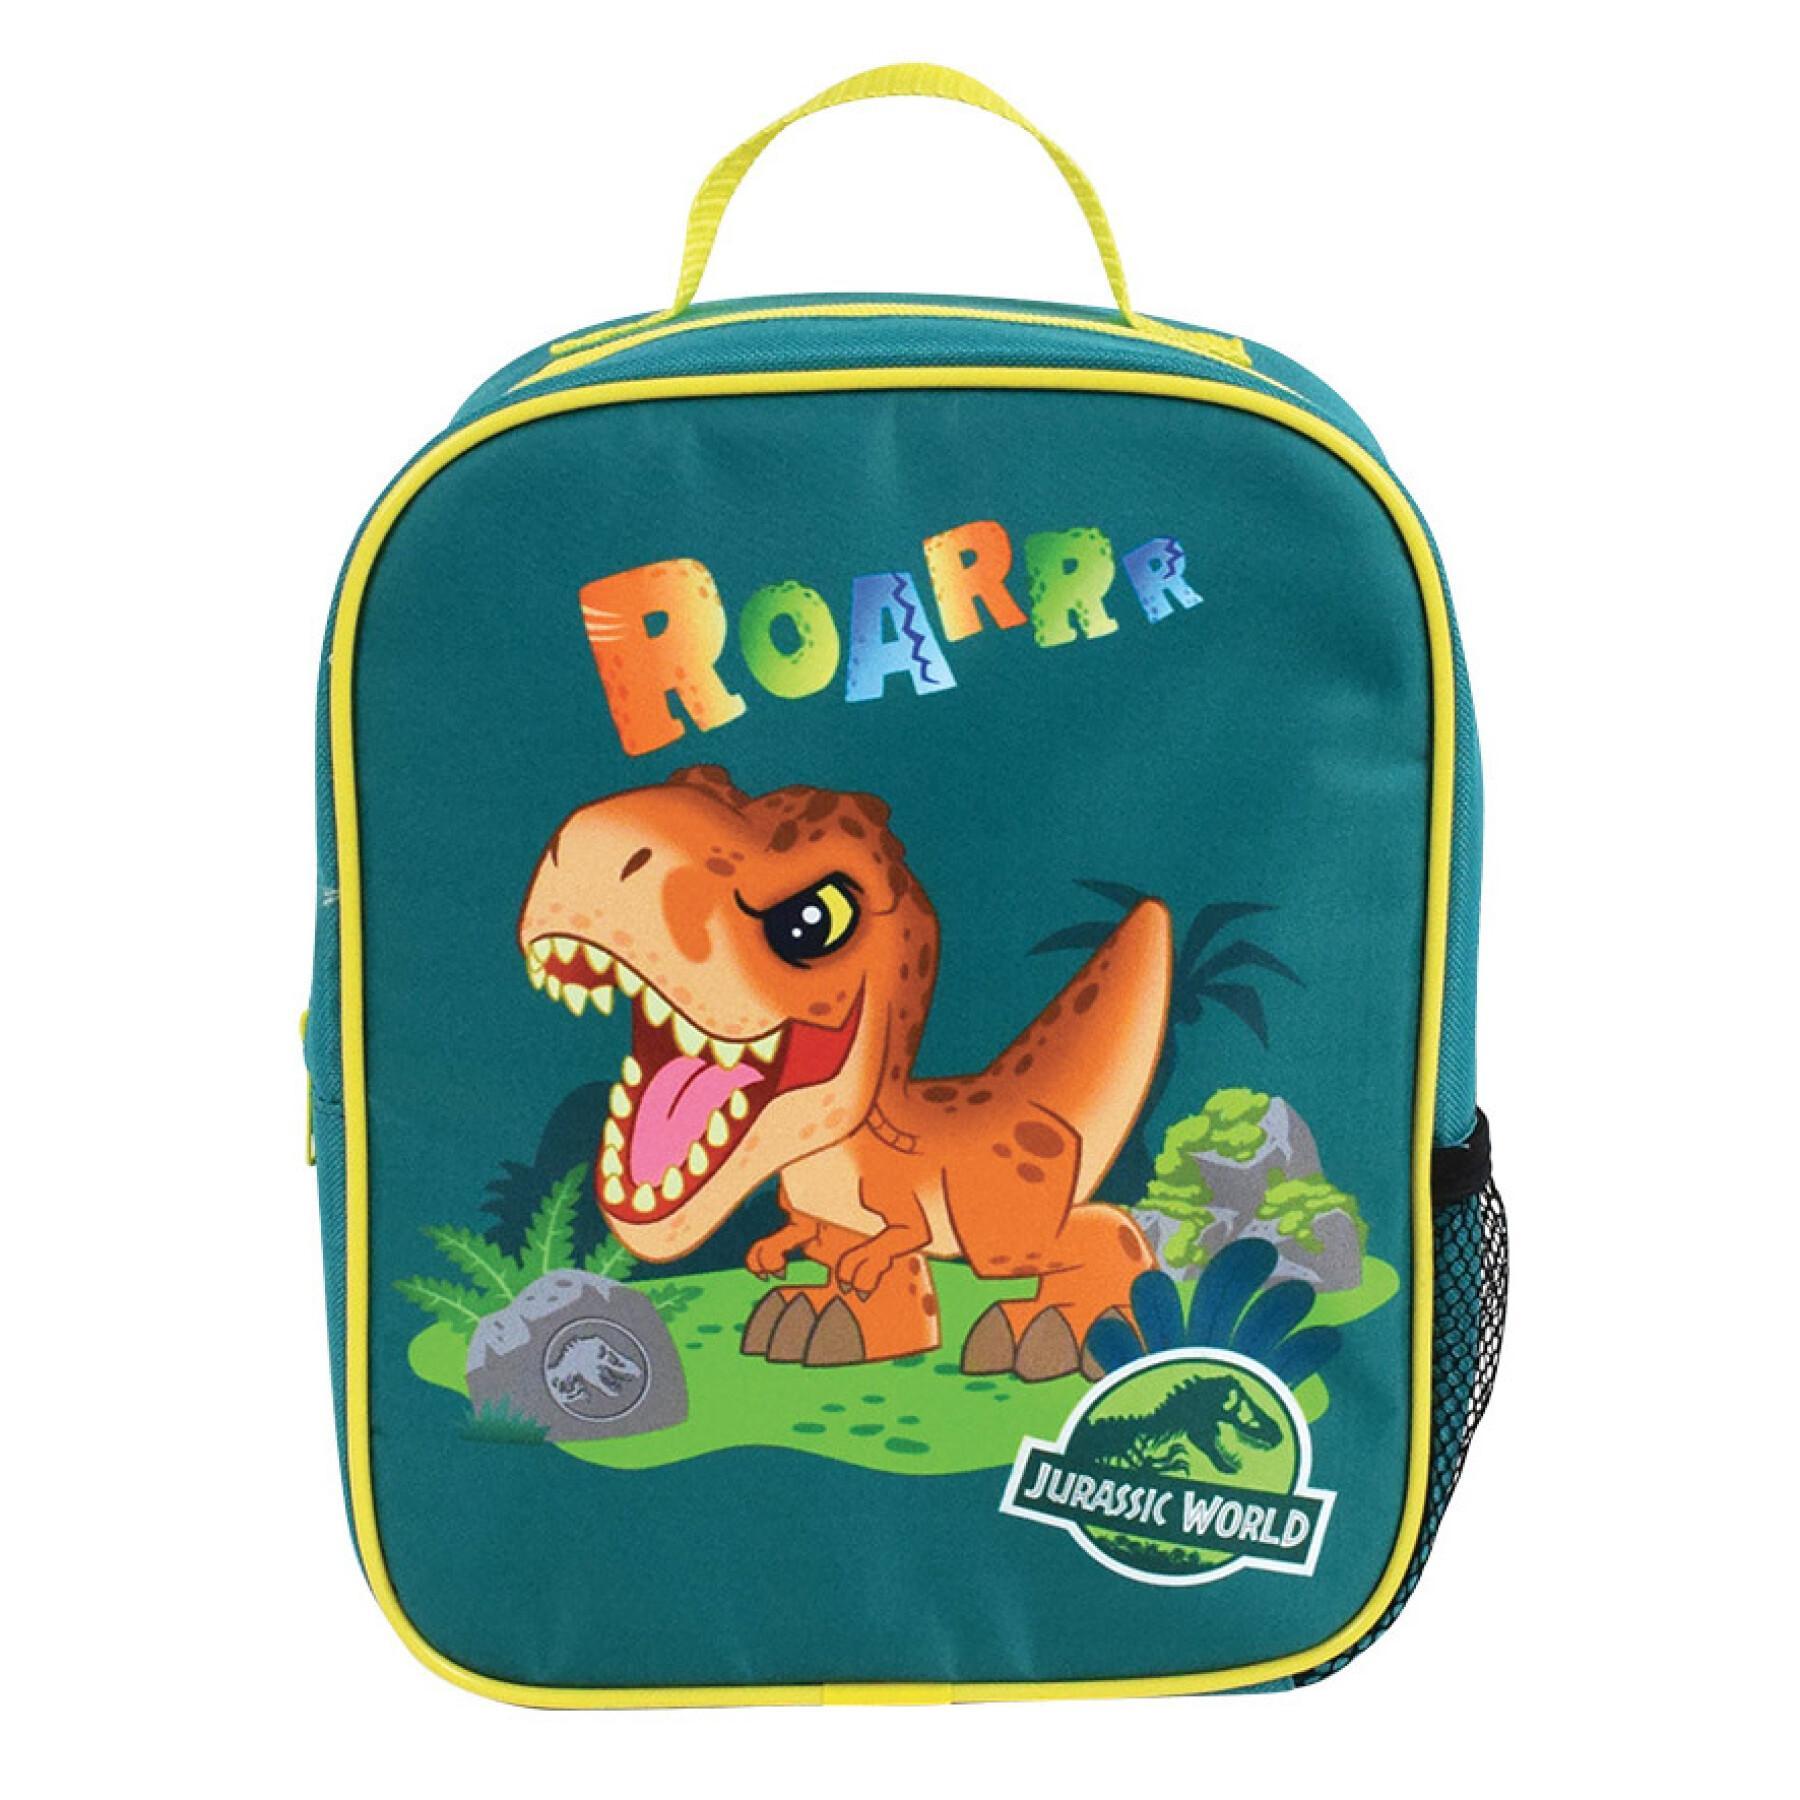 Children's insulated backpack Jemini Jurassic World